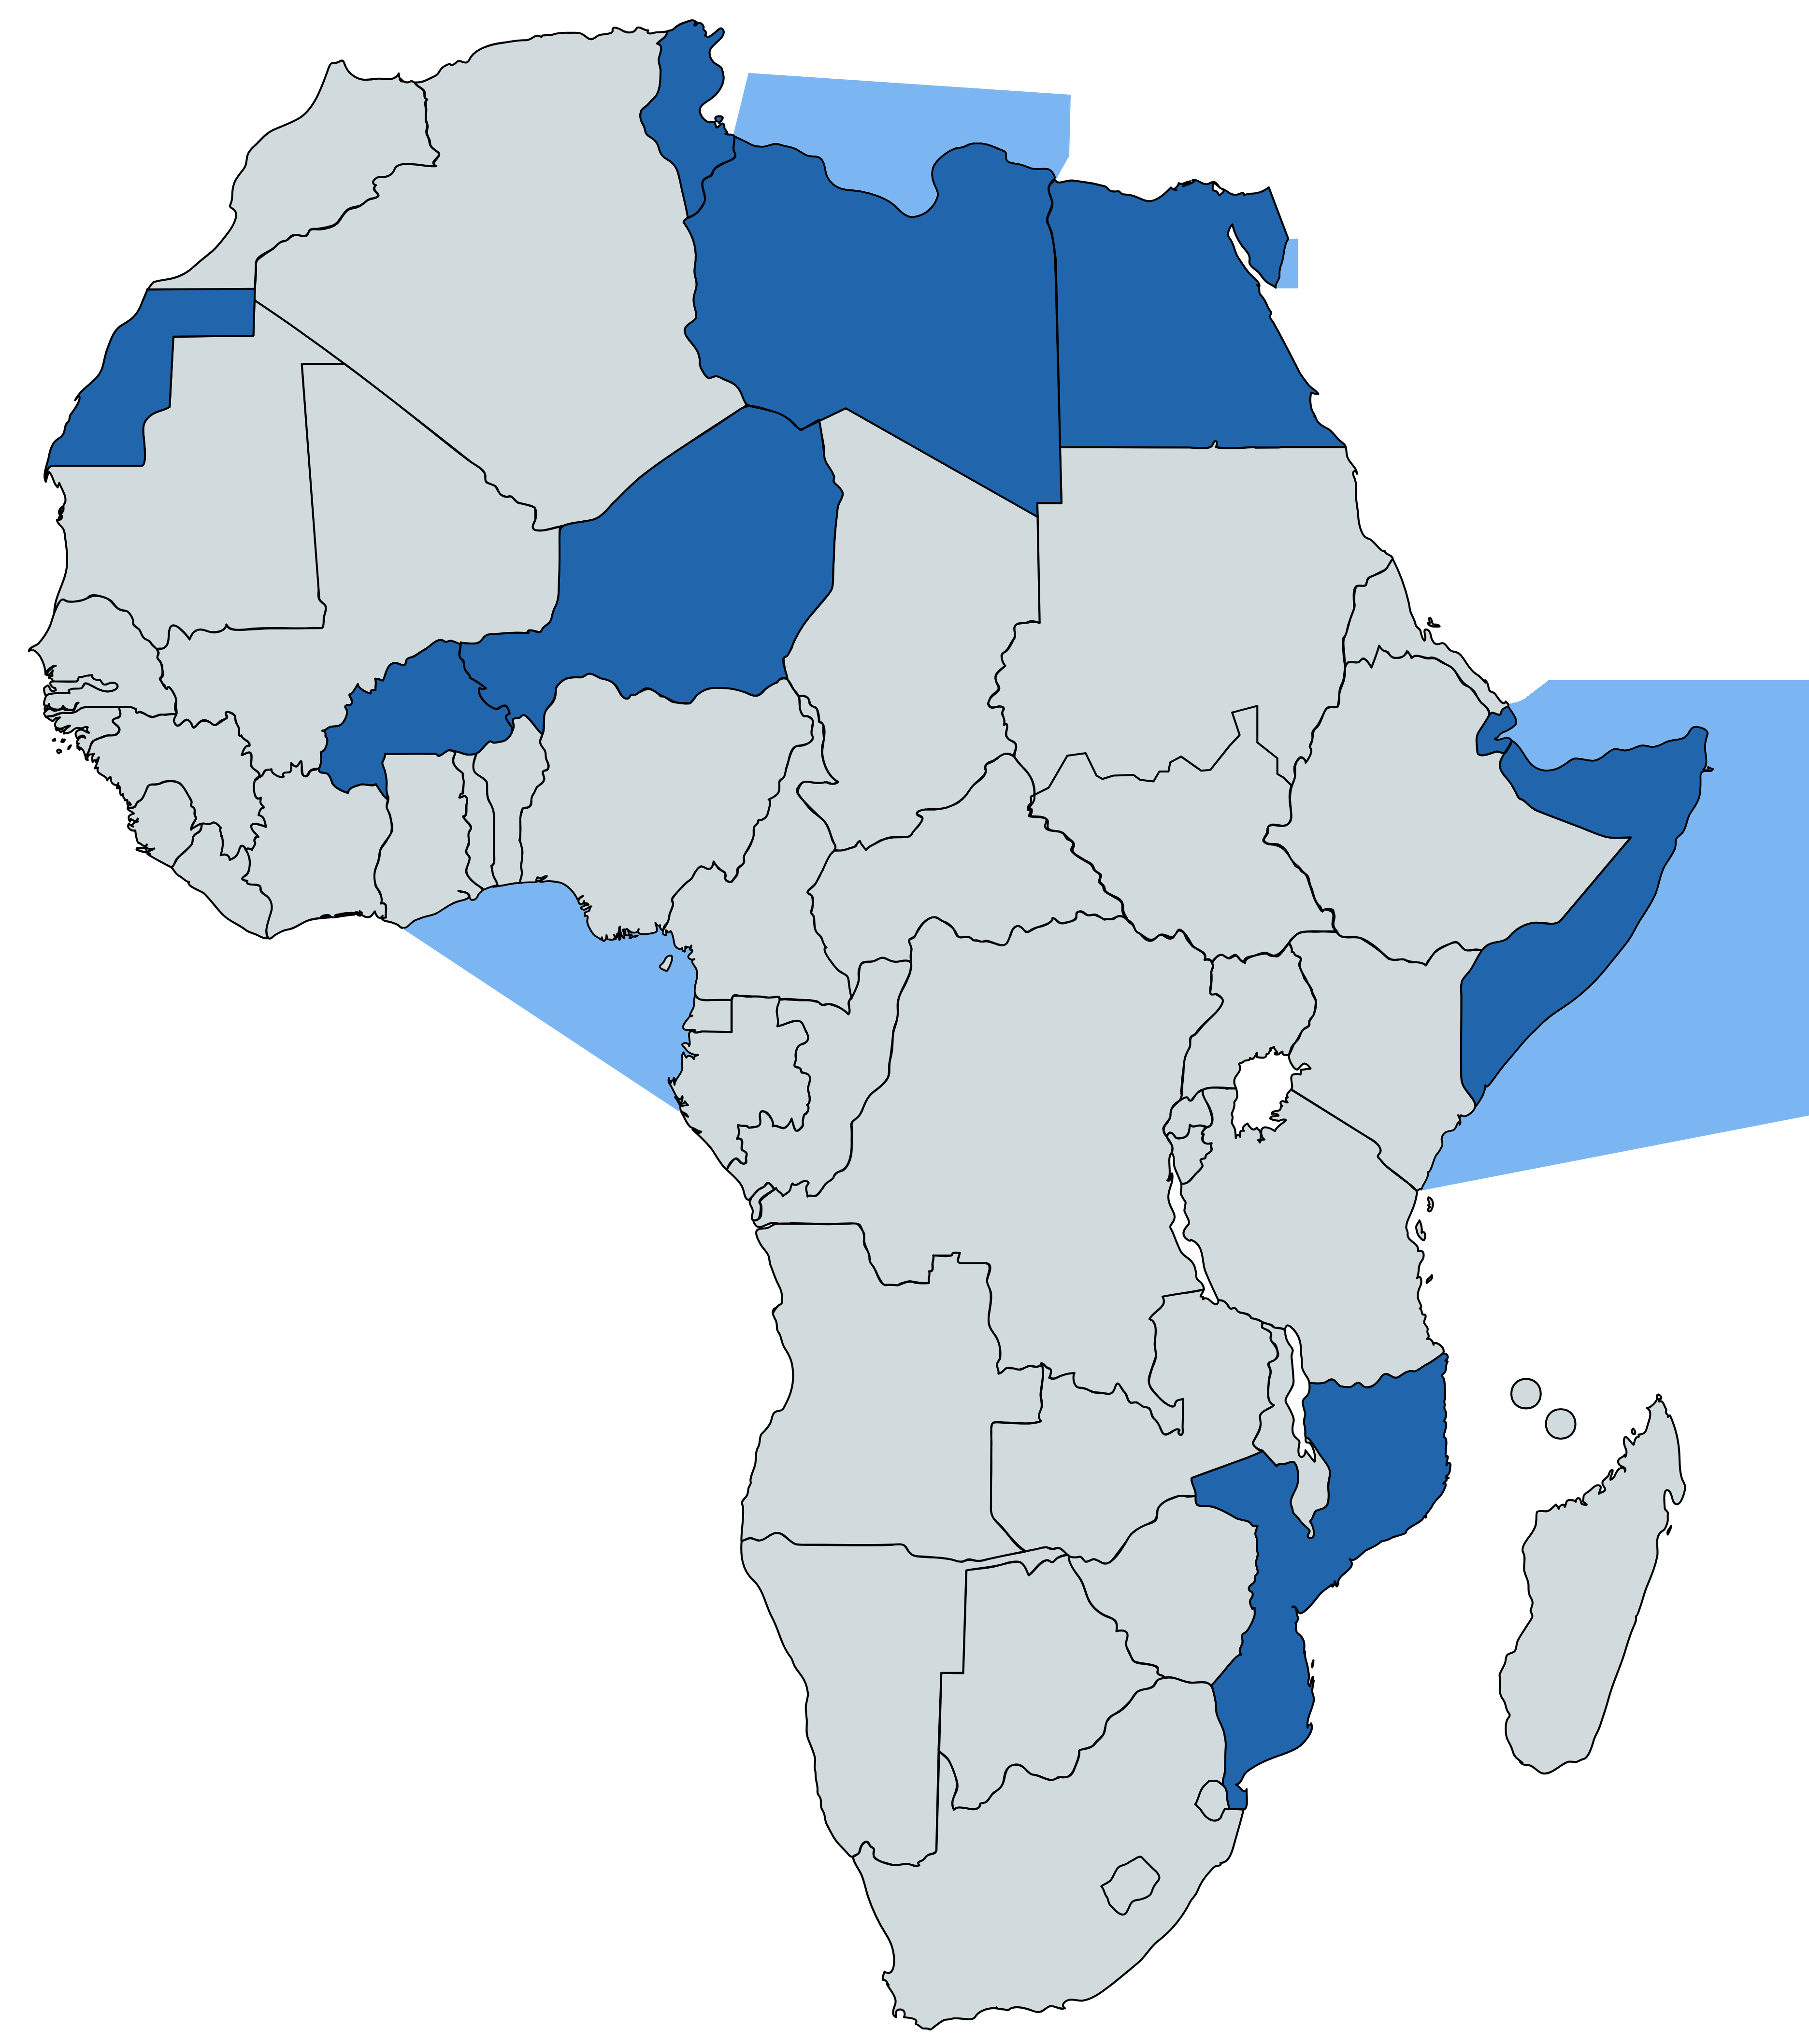 In blu i Paesi africani dove l'Italia è impegnata in operazioni militari (non solo con la presenza sul terreno). In colore più chiaro le aree di operazioni navali.